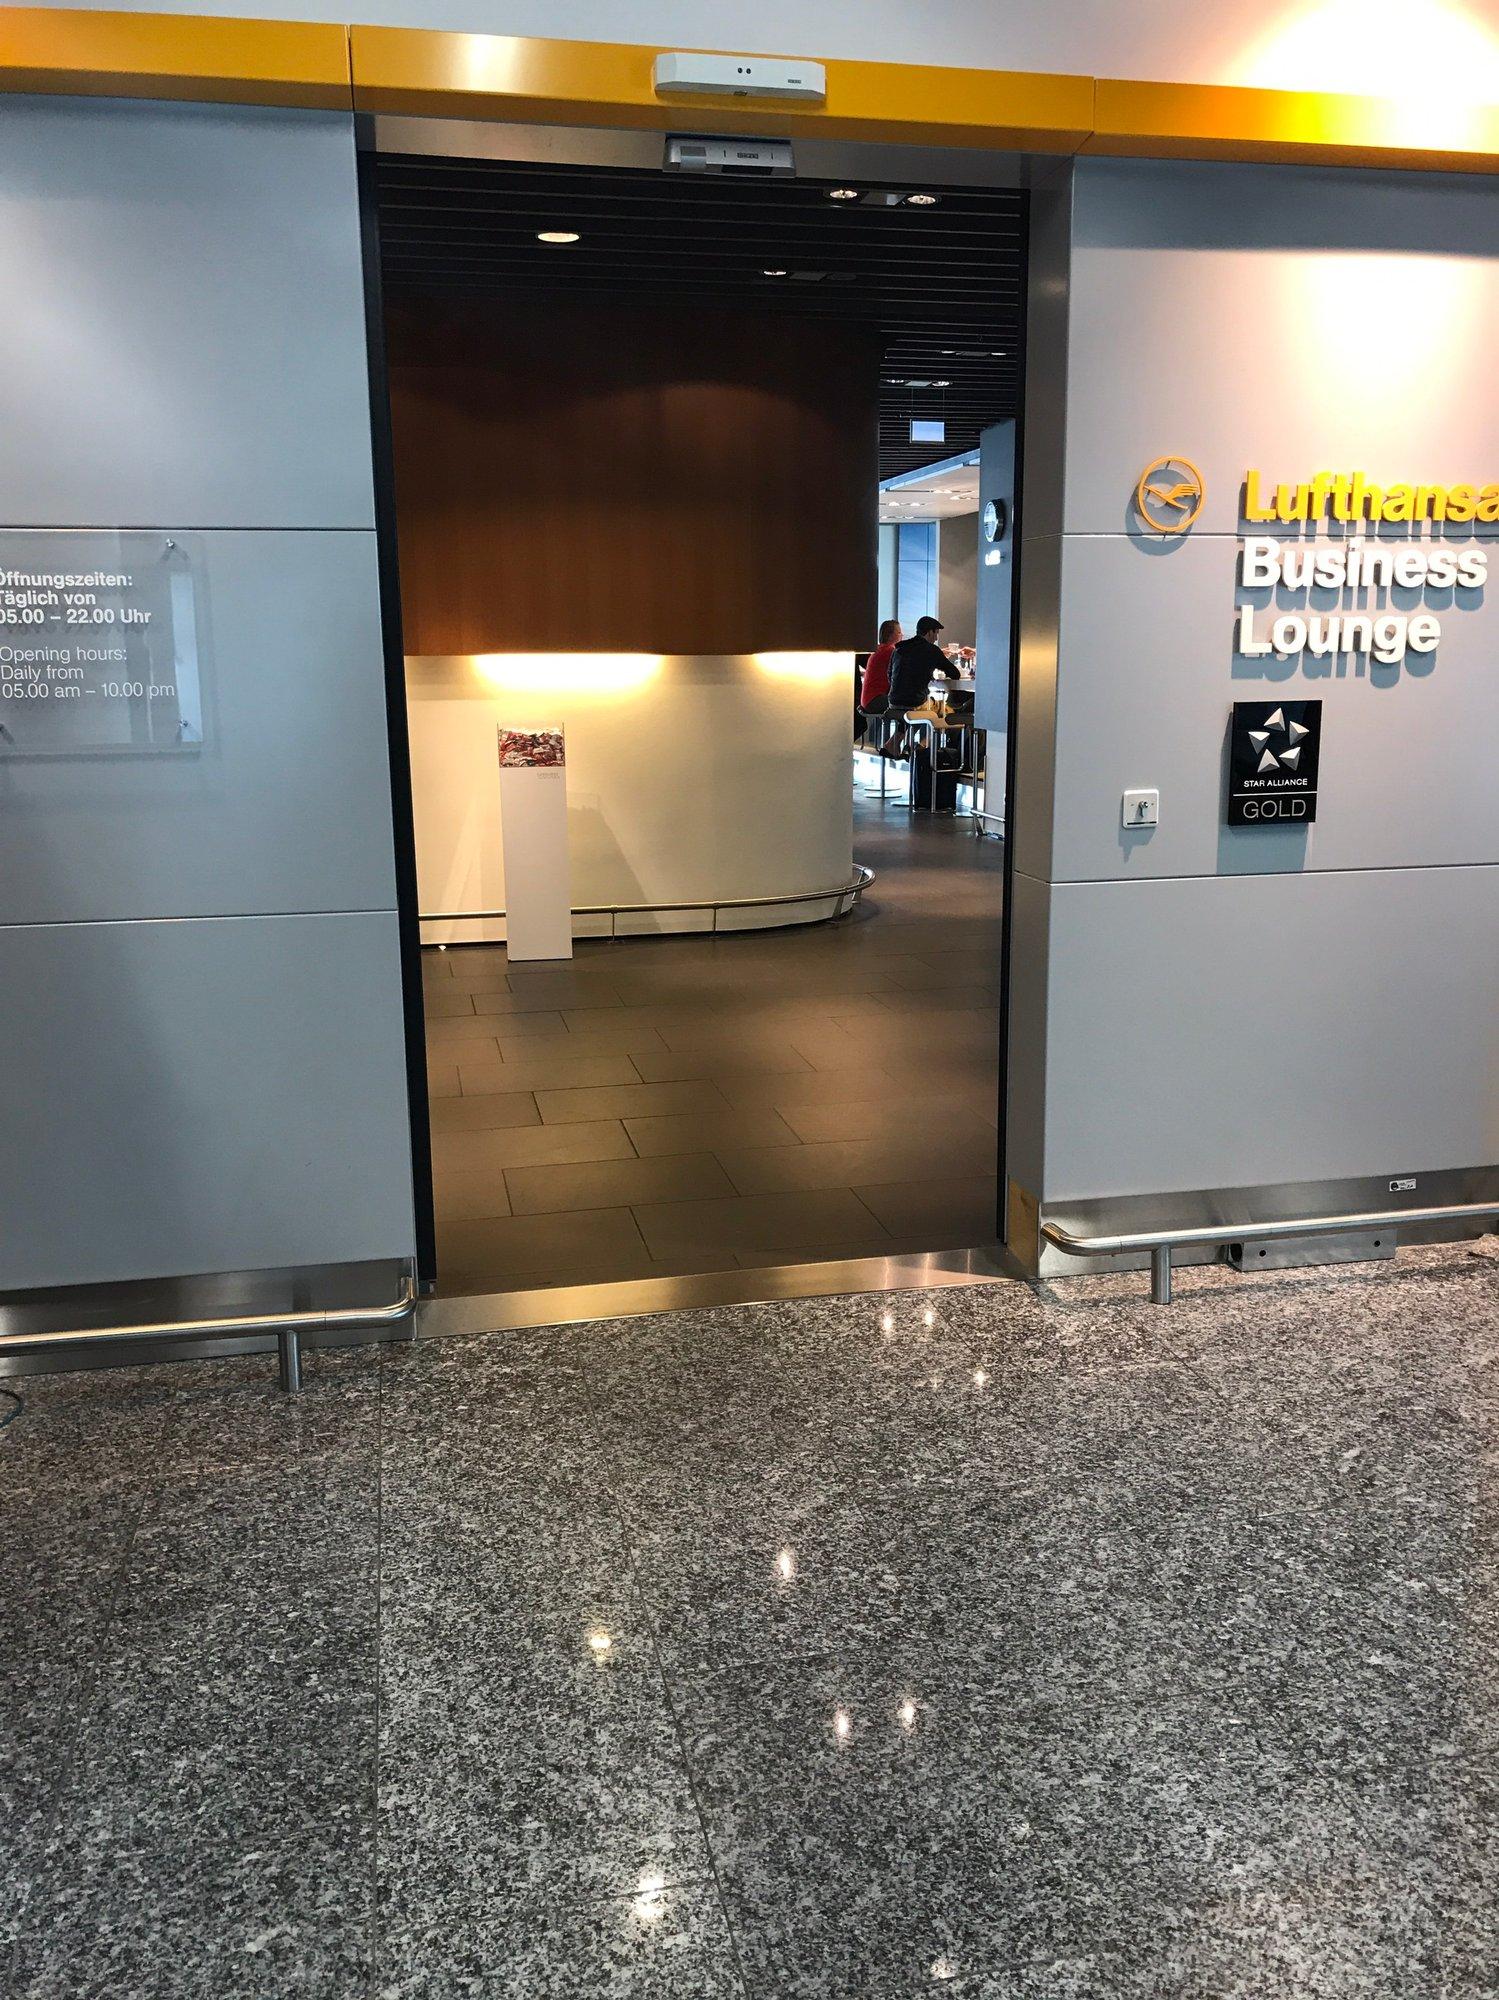 Lufthansa Business Lounge (Schengen, Gate A26) image 5 of 28